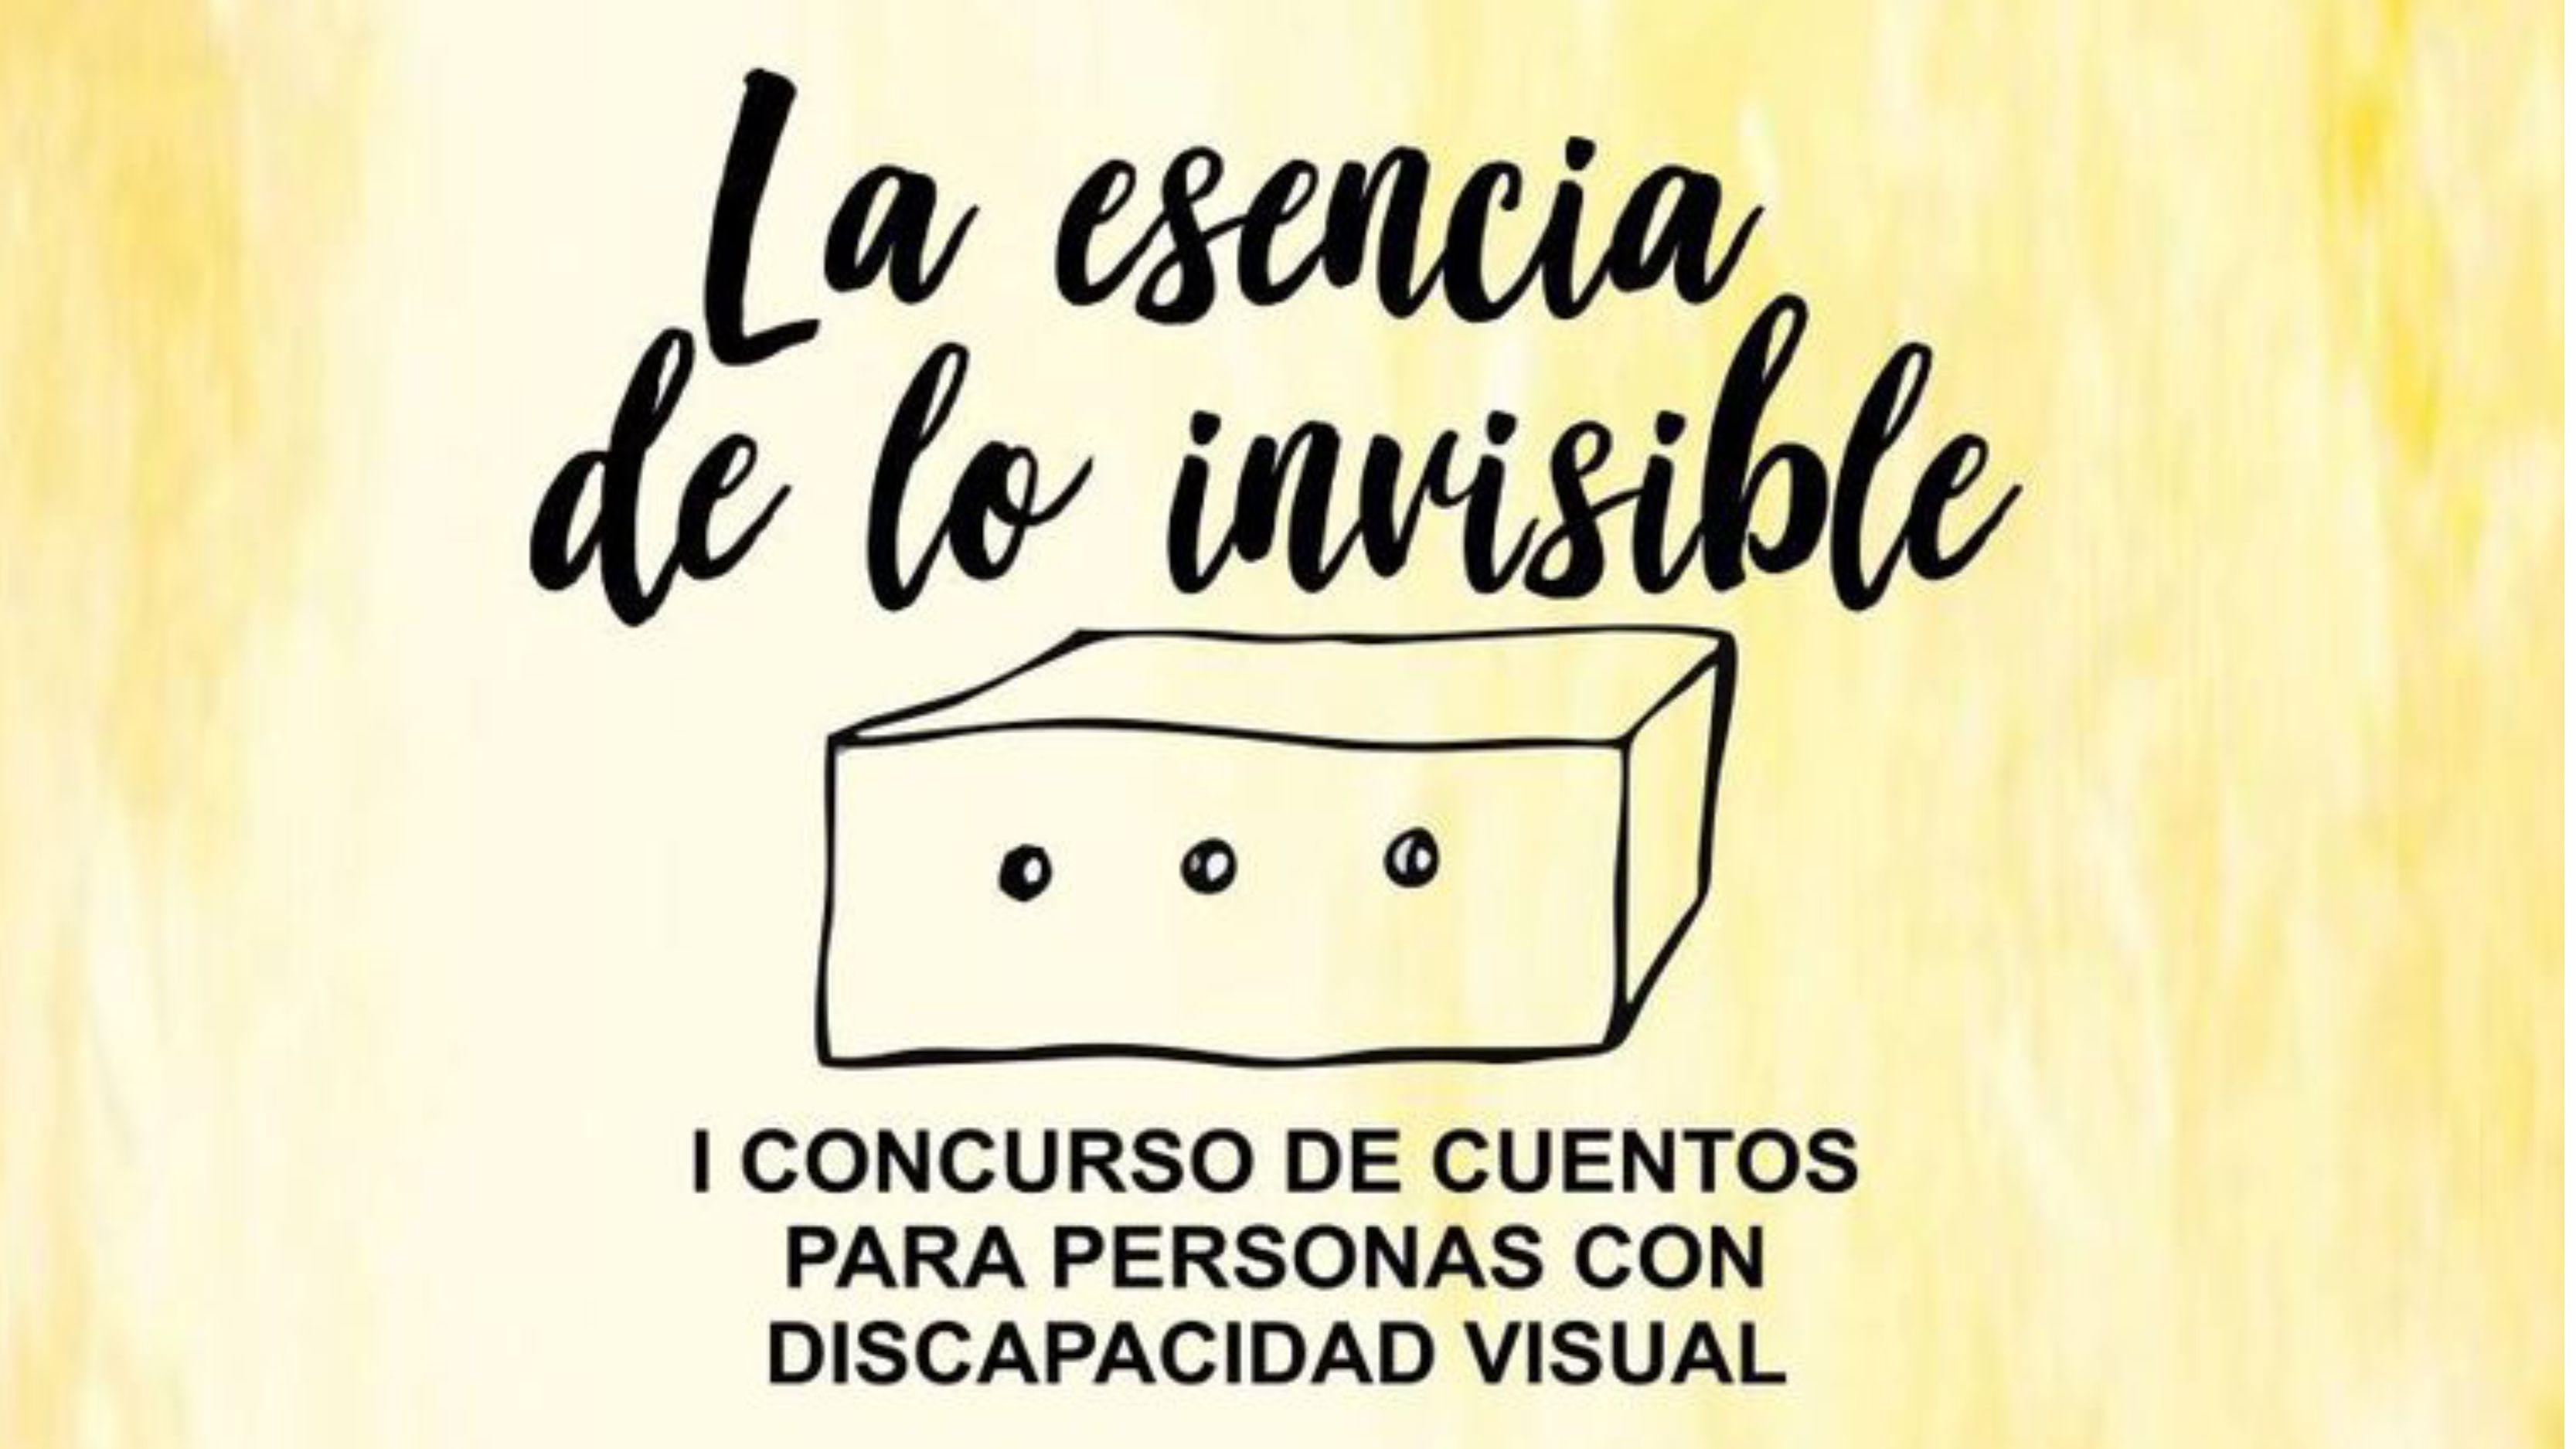 I Concurso de cuentos para personas con discapacidad visual "La esencia de lo invisble"